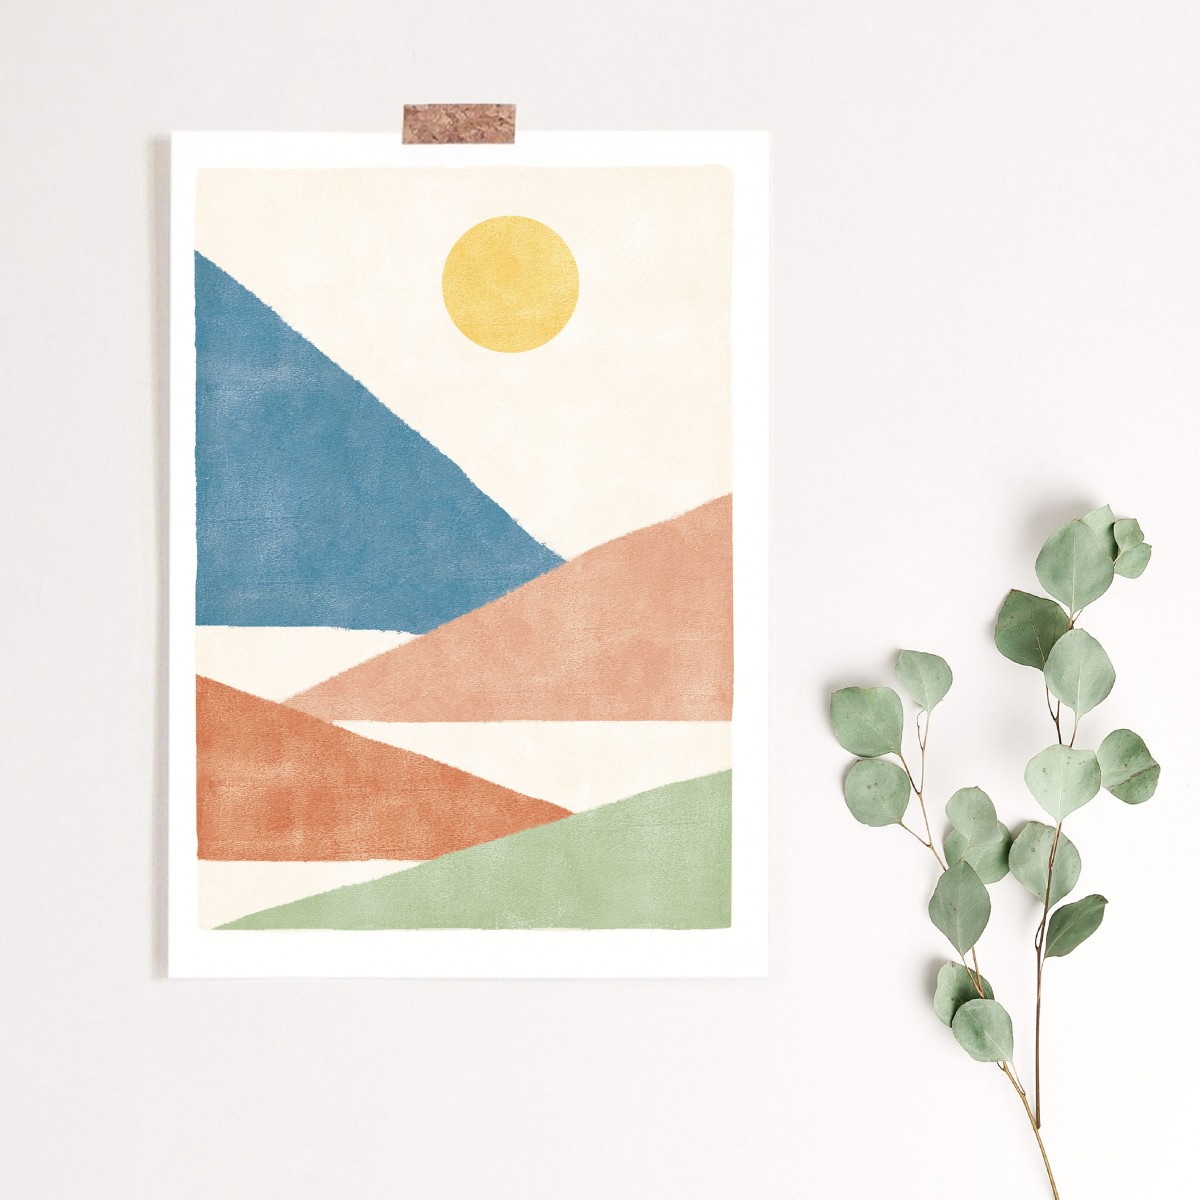 Paperlandscape | Kunstdruck | Berge Bunt | verschiedene Größen